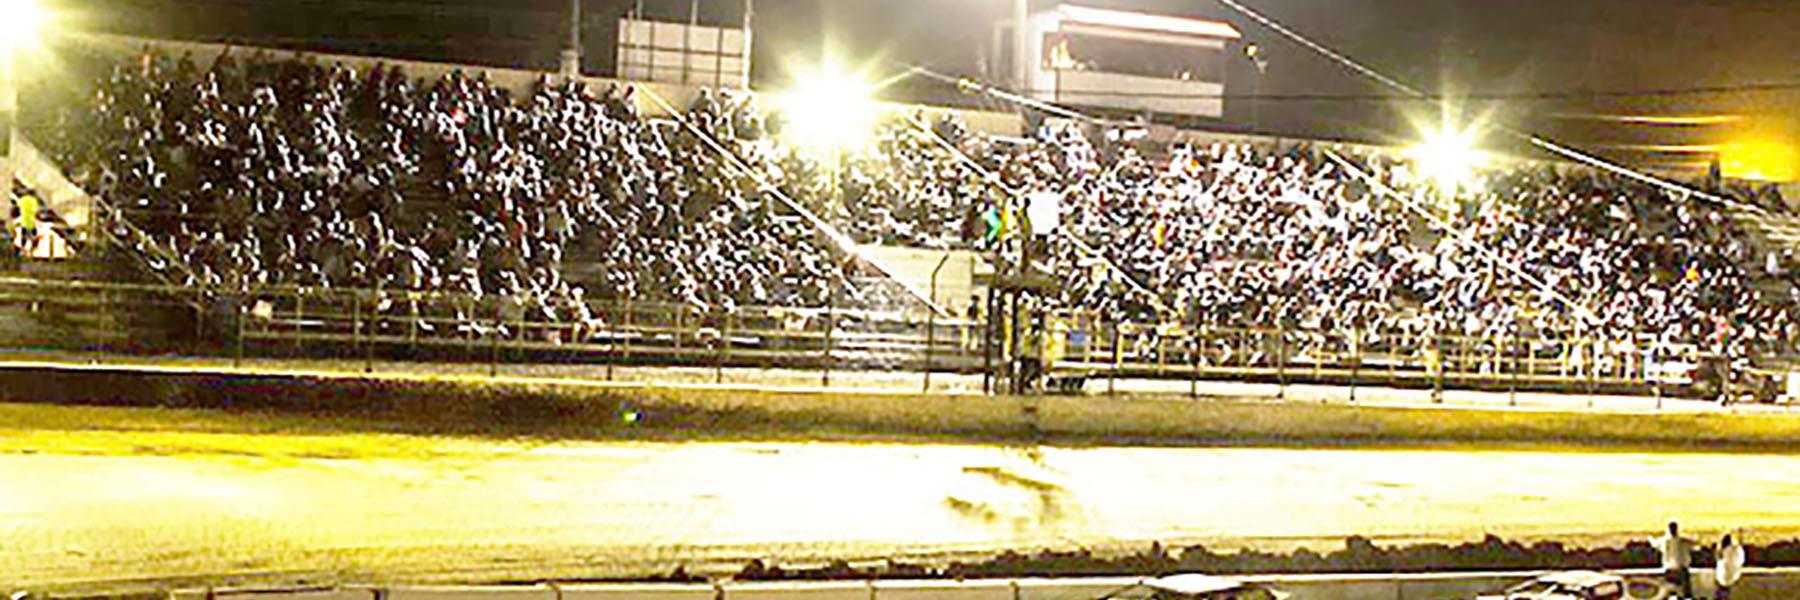 9/10/2022 - Tri-State Speedway